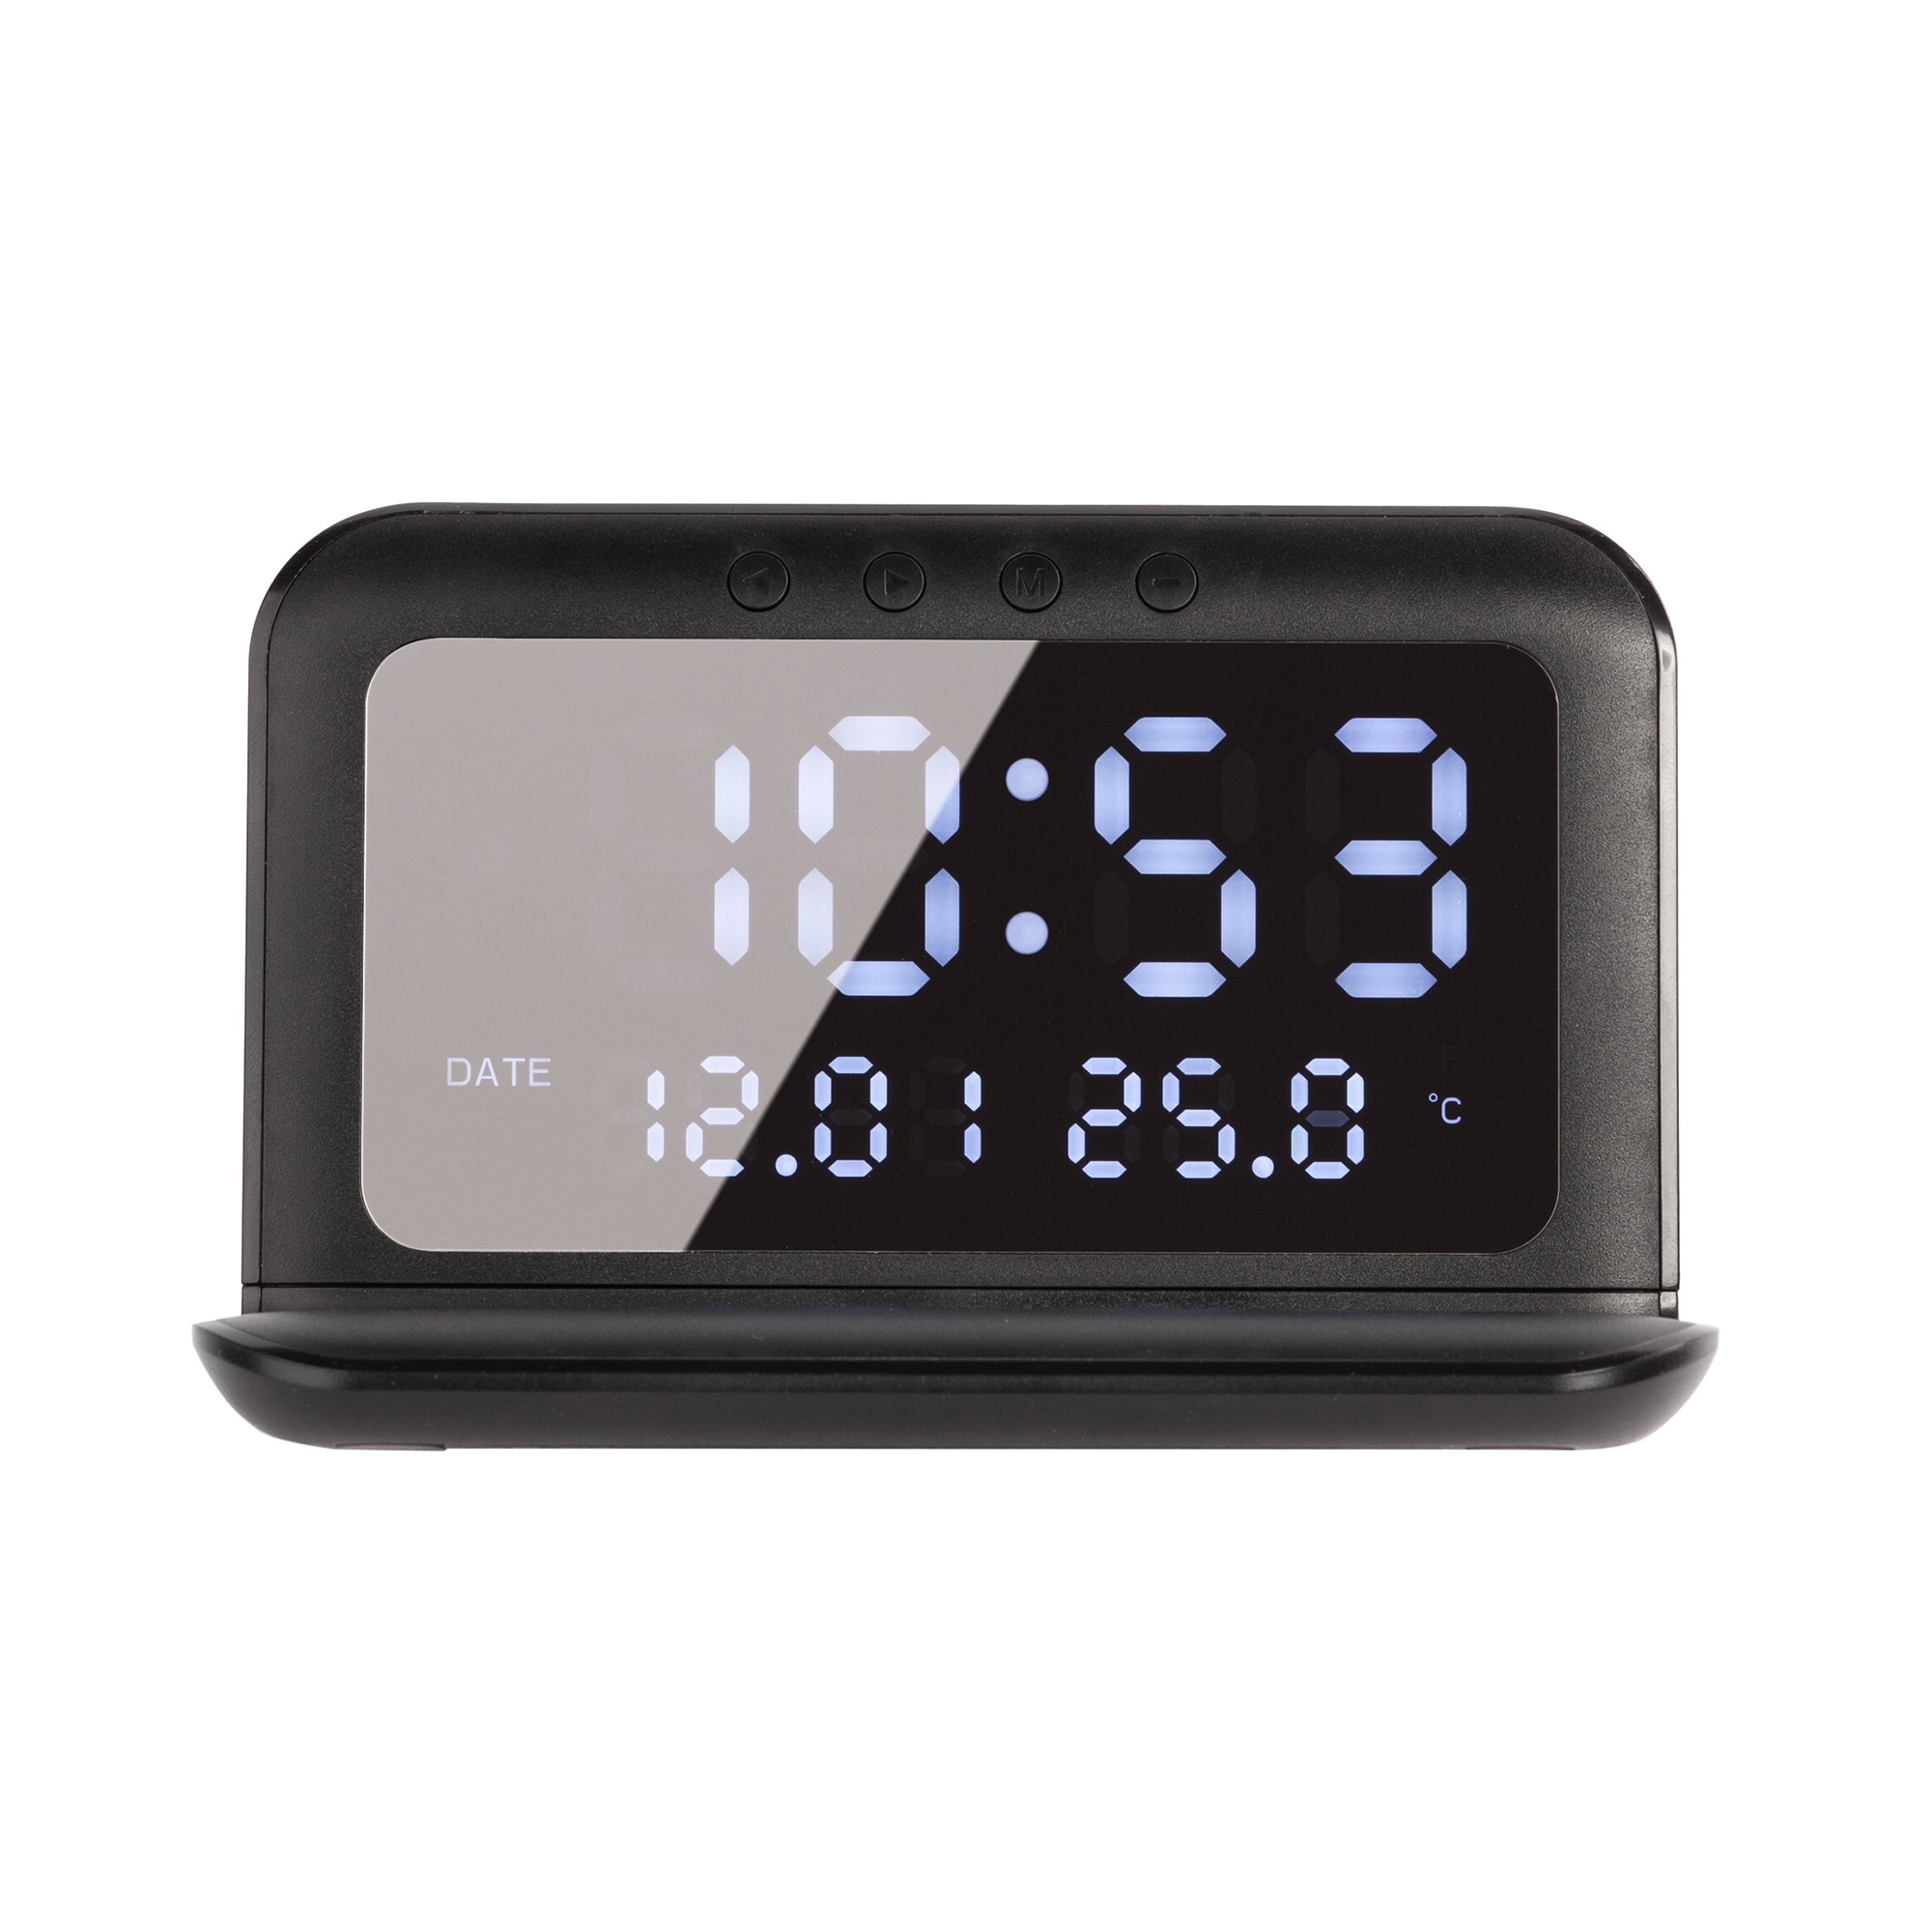 Настольные часы "Smart Time" с беспроводным (15W) зарядным устройством, будильником и термометром, со съёмным дисплеем